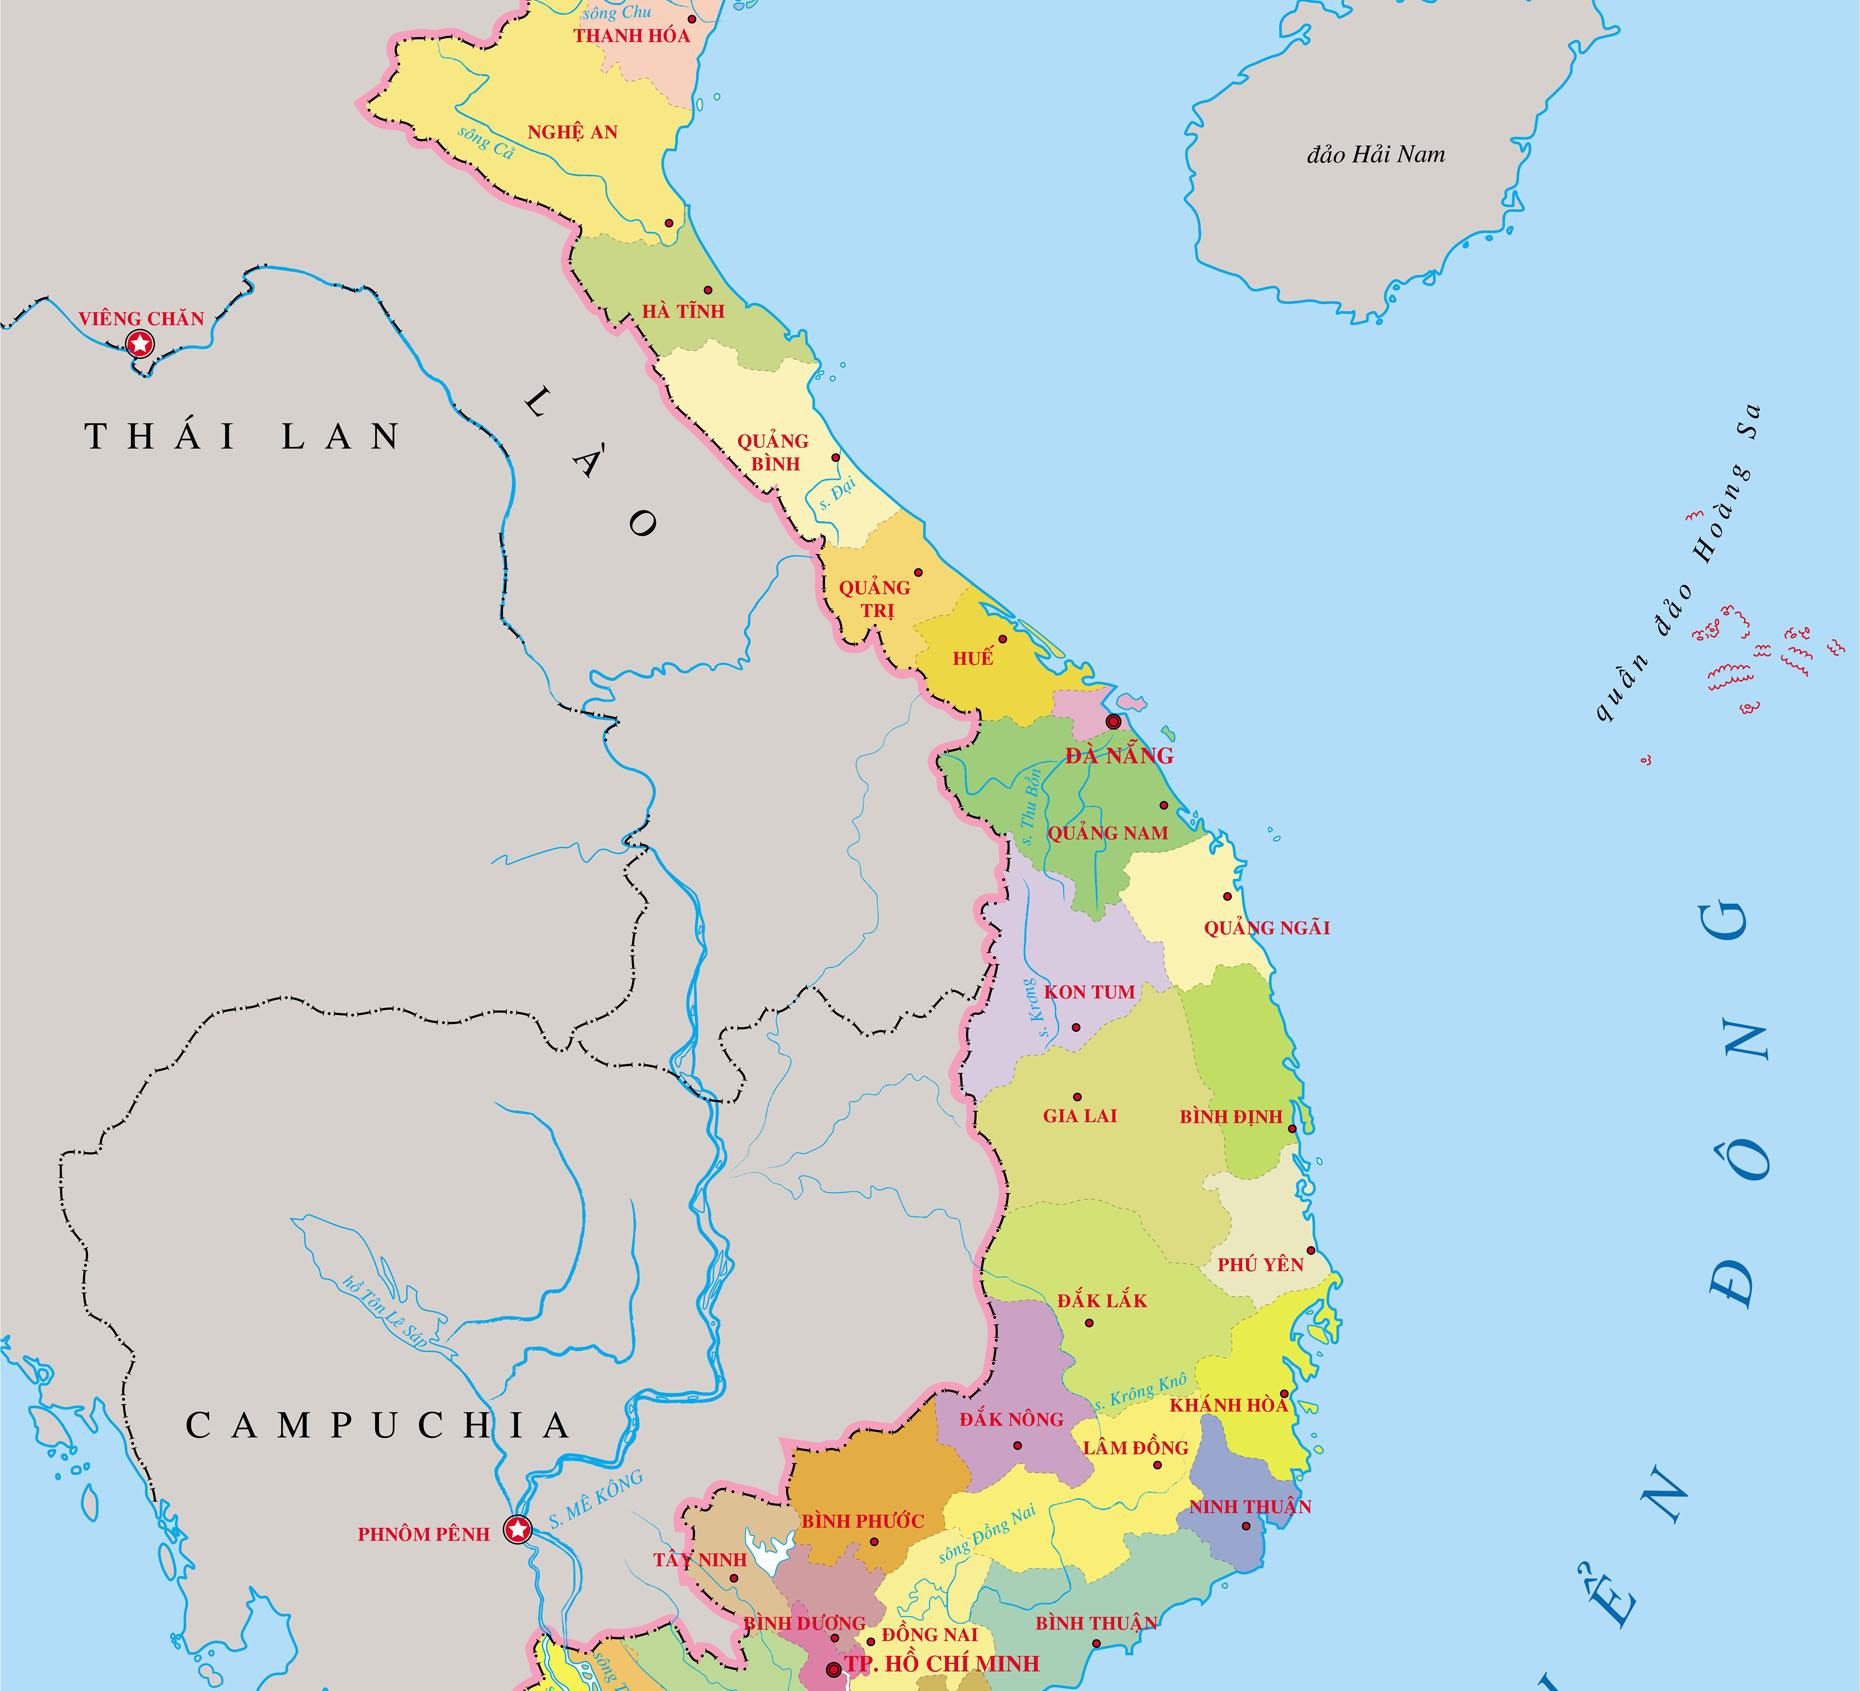 Bản đồ miền Trung Việt Nam: 
Miền Trung Việt Nam là một khu vực đầy những nét đặc trưng văn hóa, lịch sử phong phú. Qua bản đồ miền Trung, bạn có thể biết được vị trí các tỉnh thành, đặc sản, di sản và phong cảnh thiên nhiên của vùng đất này. Hãy khám phá miền Trung Việt Nam một cách đầy thú vị.